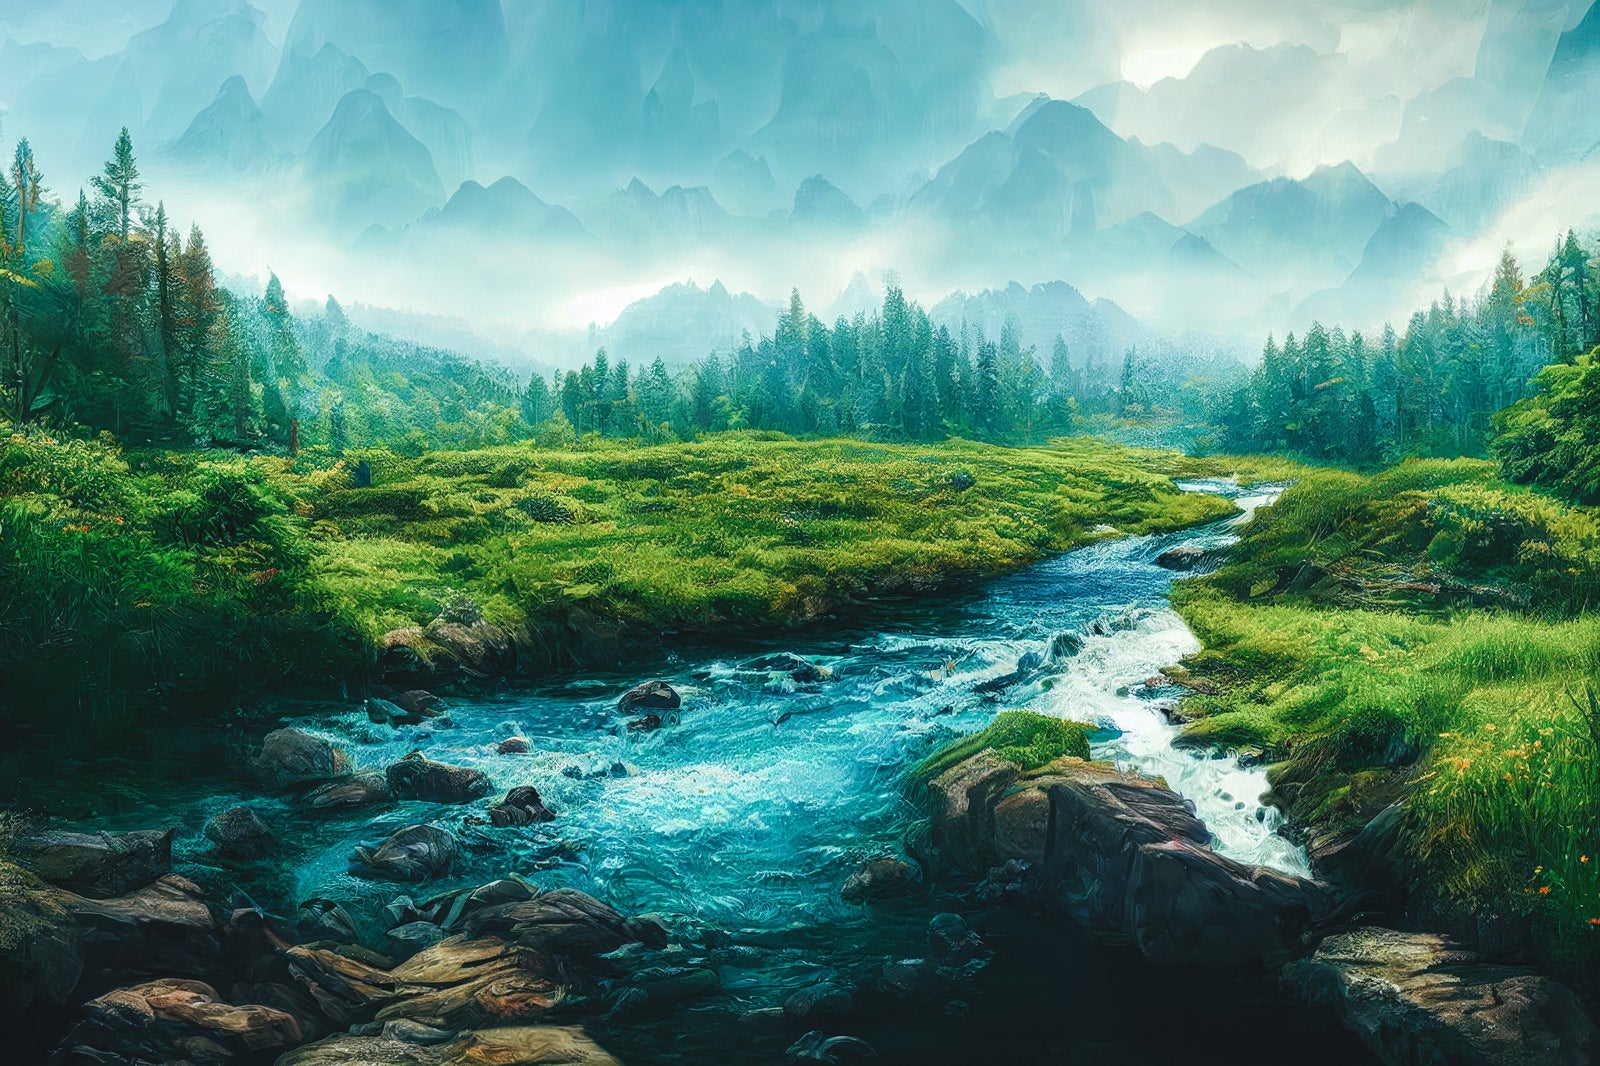 「山々の影と自然の小川」の写真